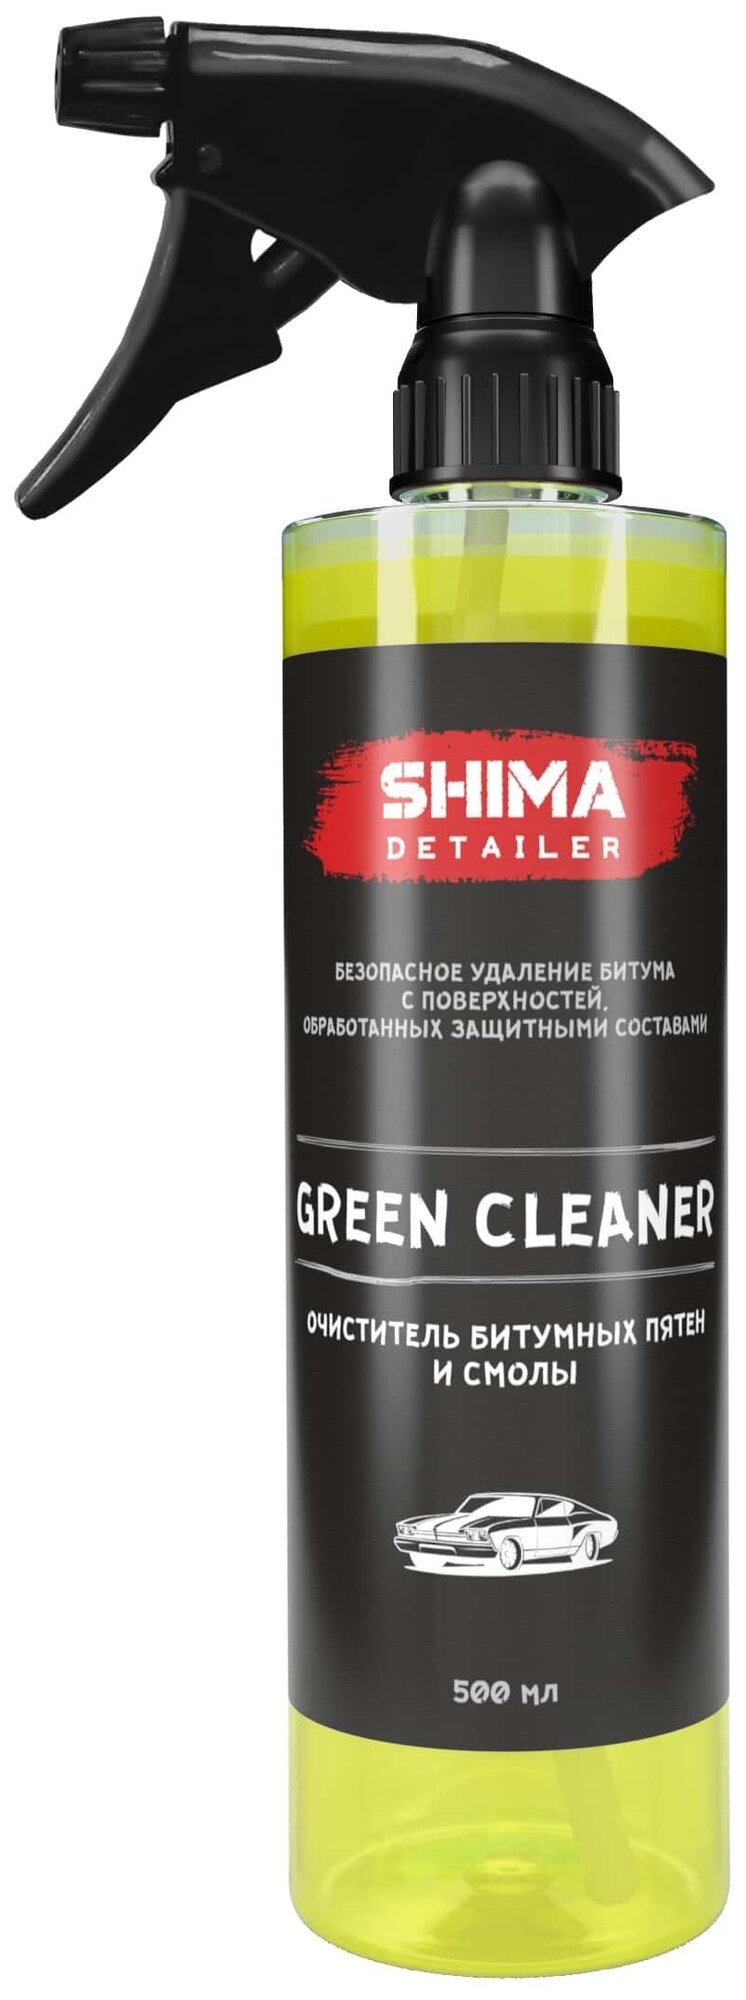 Очиститель кузова битумных пятен и смолы SHIMA DETAILER GREEN CLEANER 500 мл 4603740920032